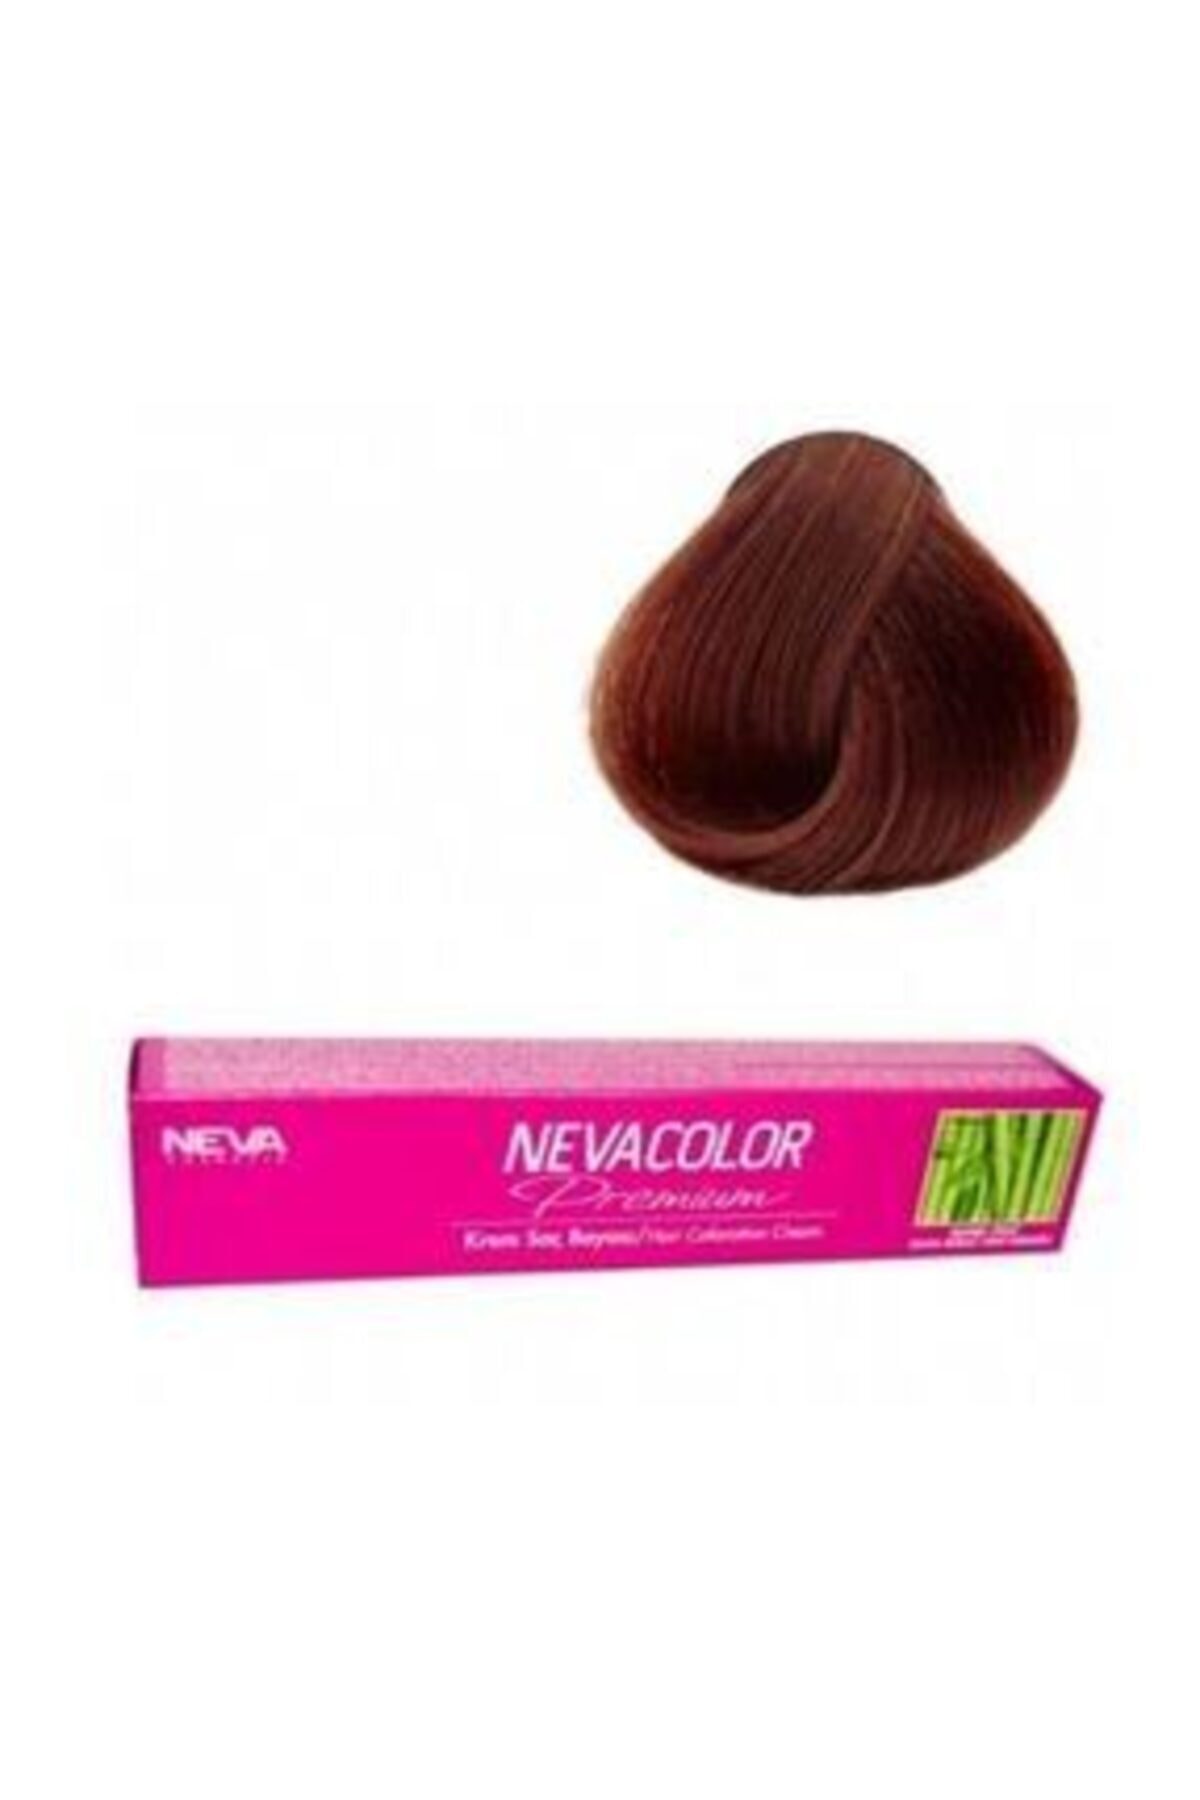 Neva Color Premium Tüp Saç Boyası 6.0 Yoğun Koyu Kumral 50 Ml 8690057005718